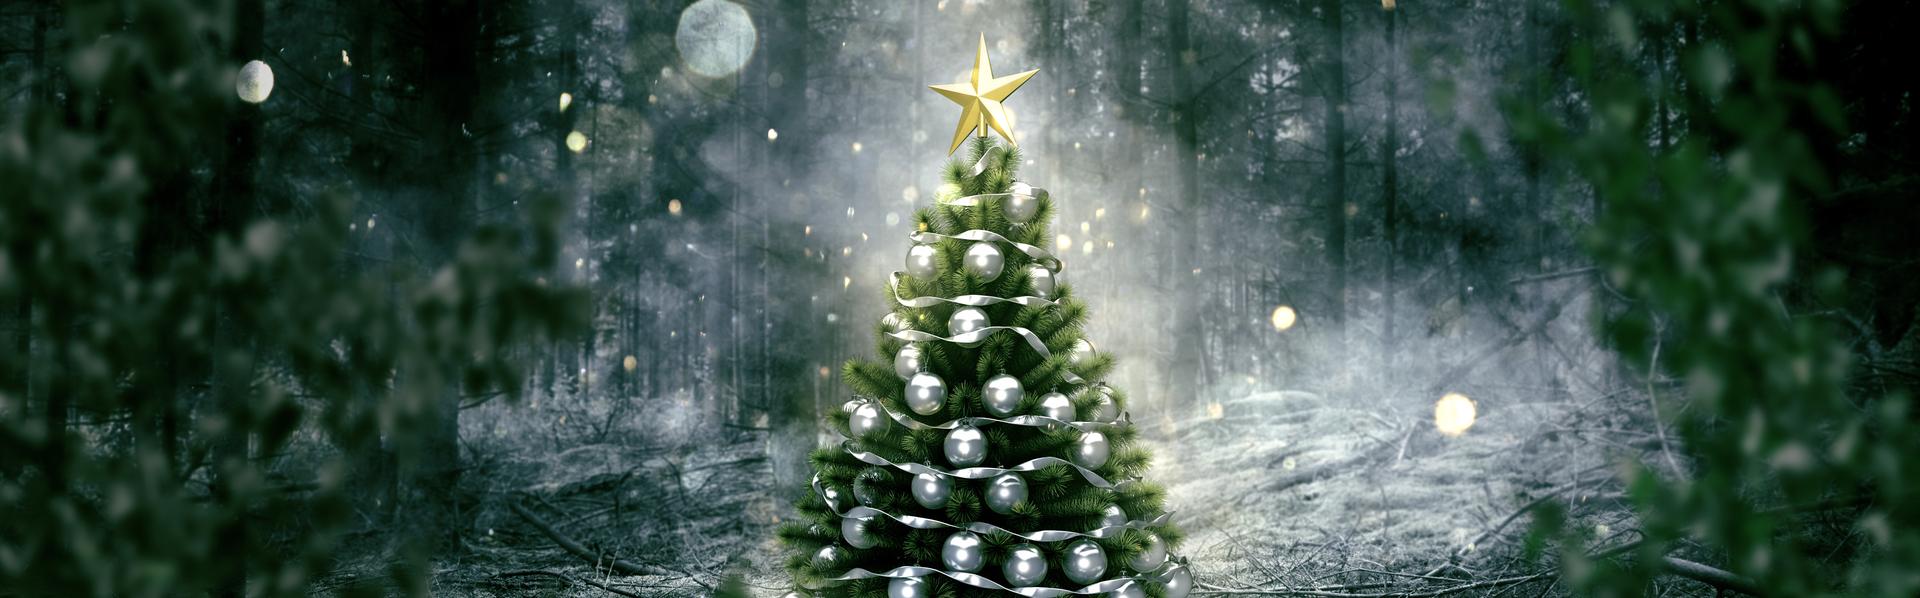 Le sapin de Noël, l'un des symboles des fêtes de fin d'année dans le monde chrétien. [Fotolia - lassedesignen]